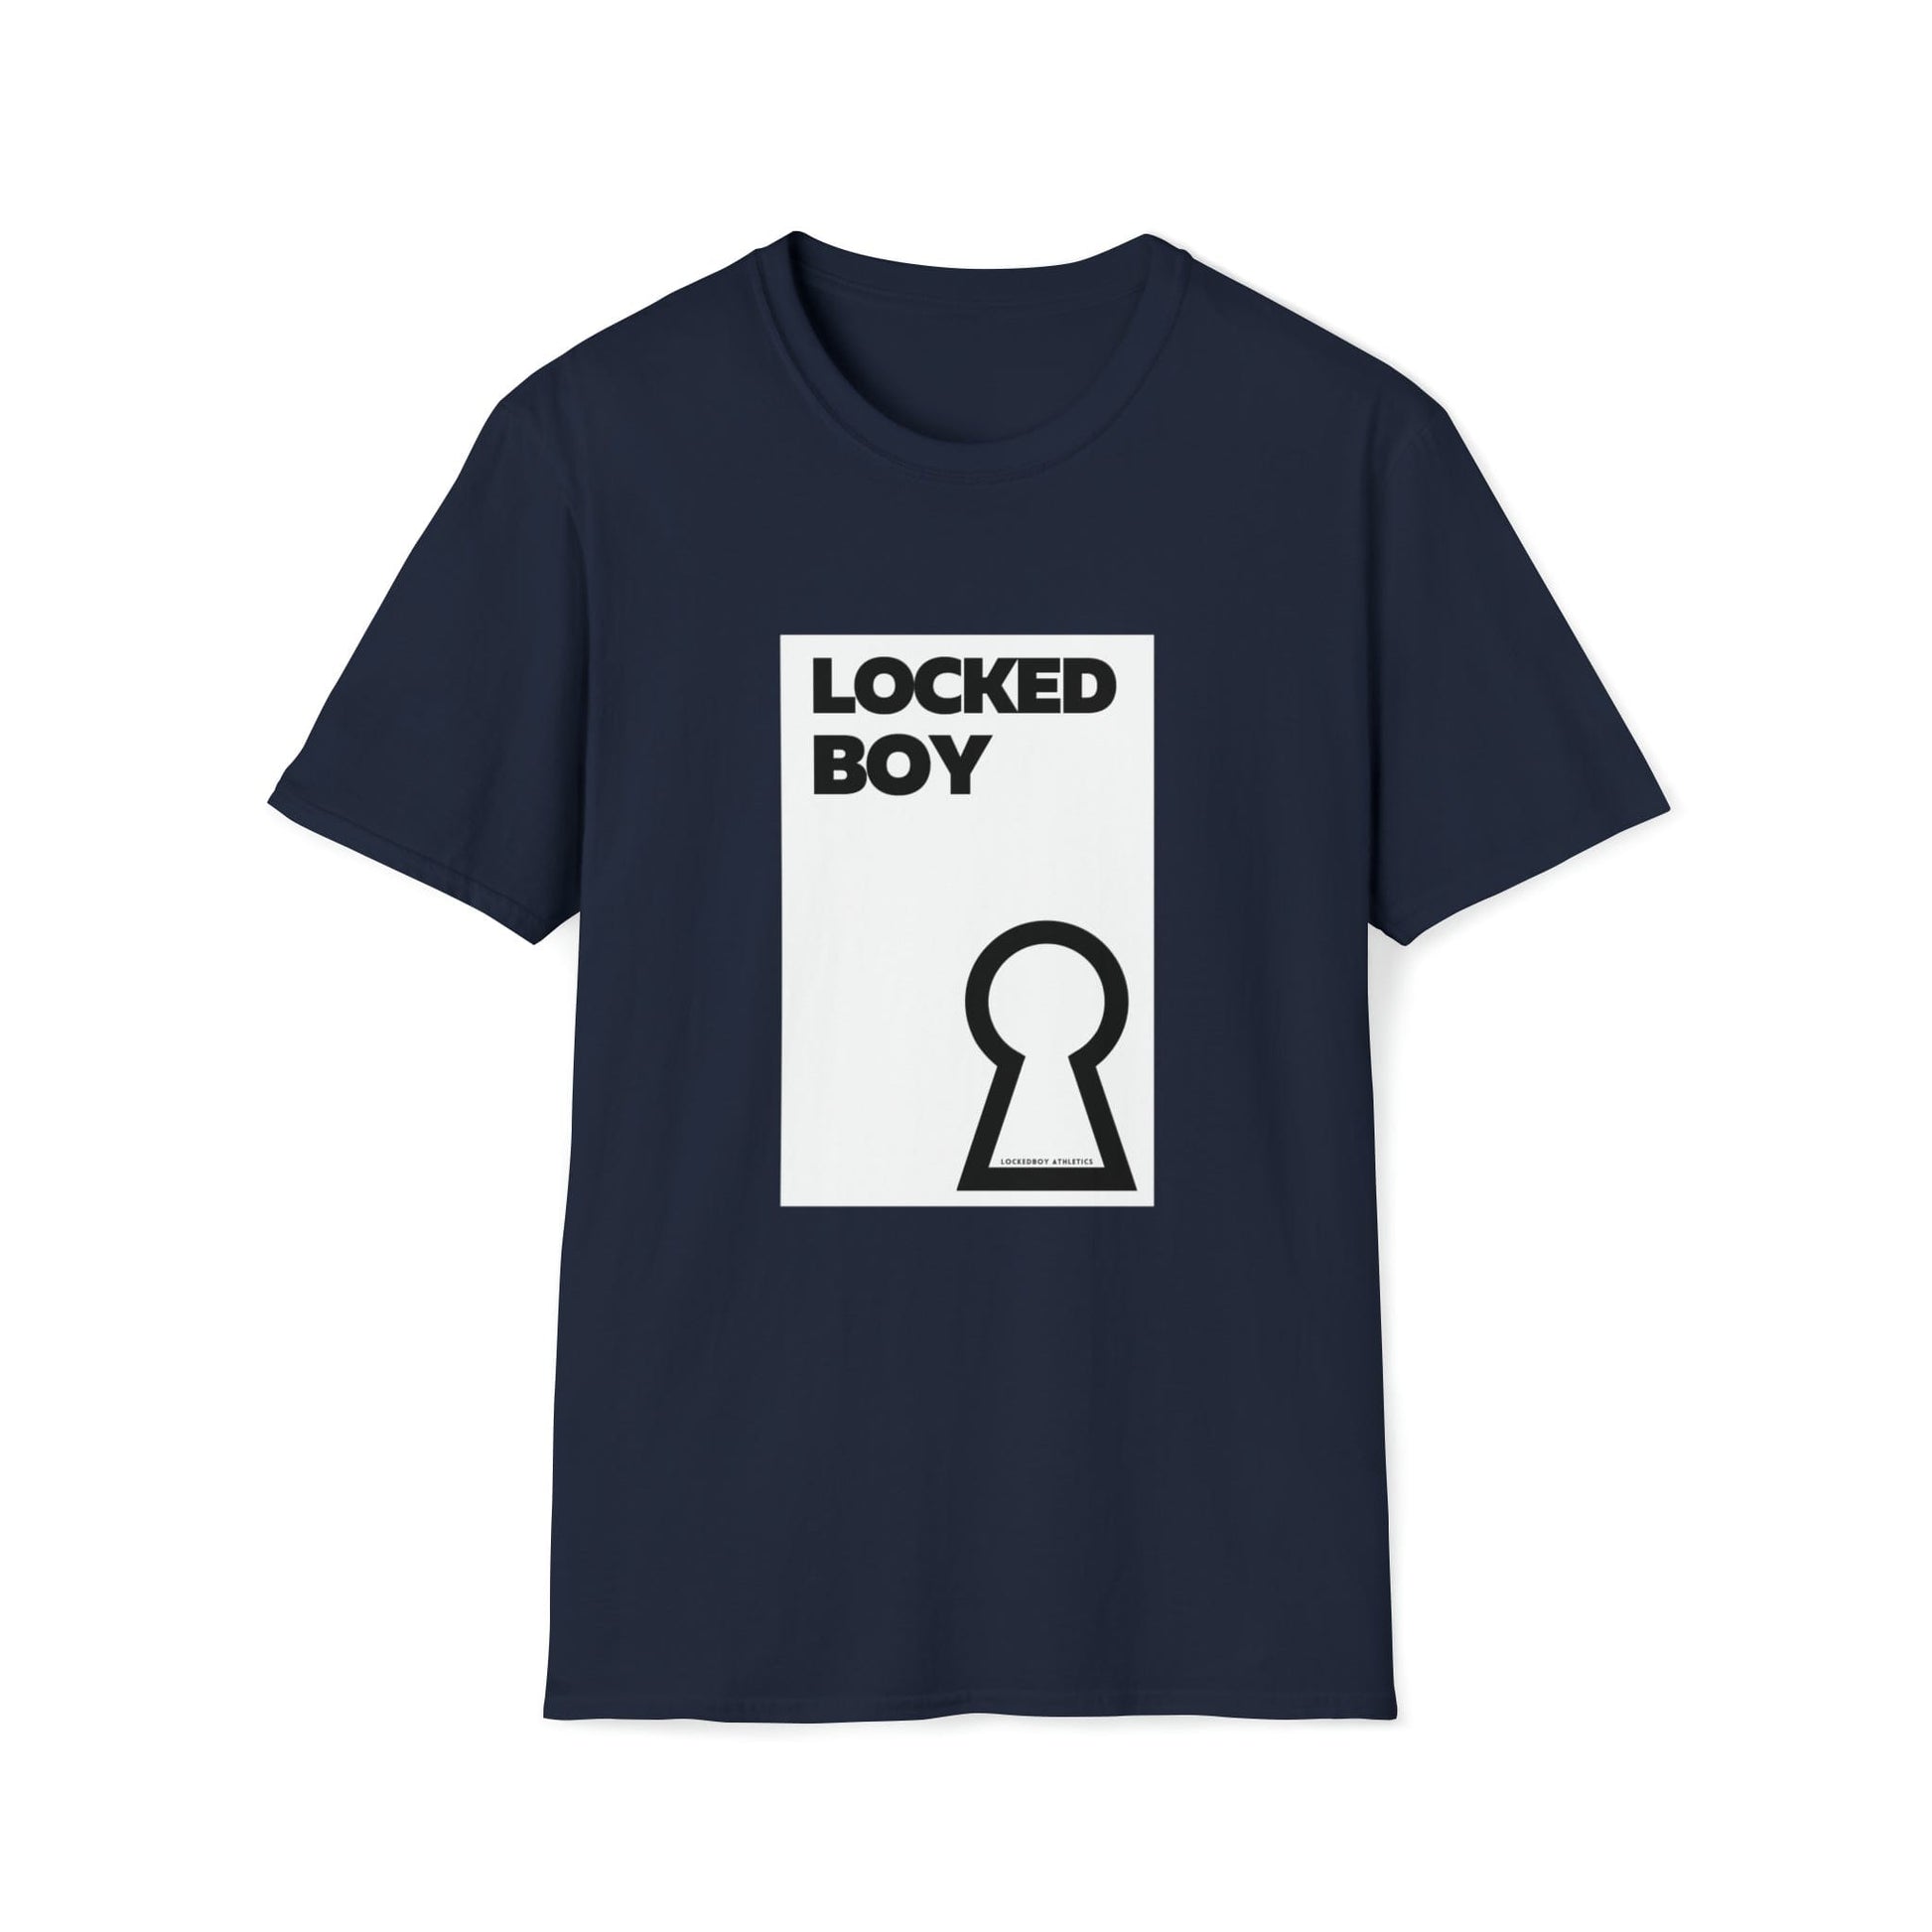 T-Shirt Navy / S LockedBoy OG - Lockedboy Athletics Chastity Tshirt LEATHERDADDY BATOR